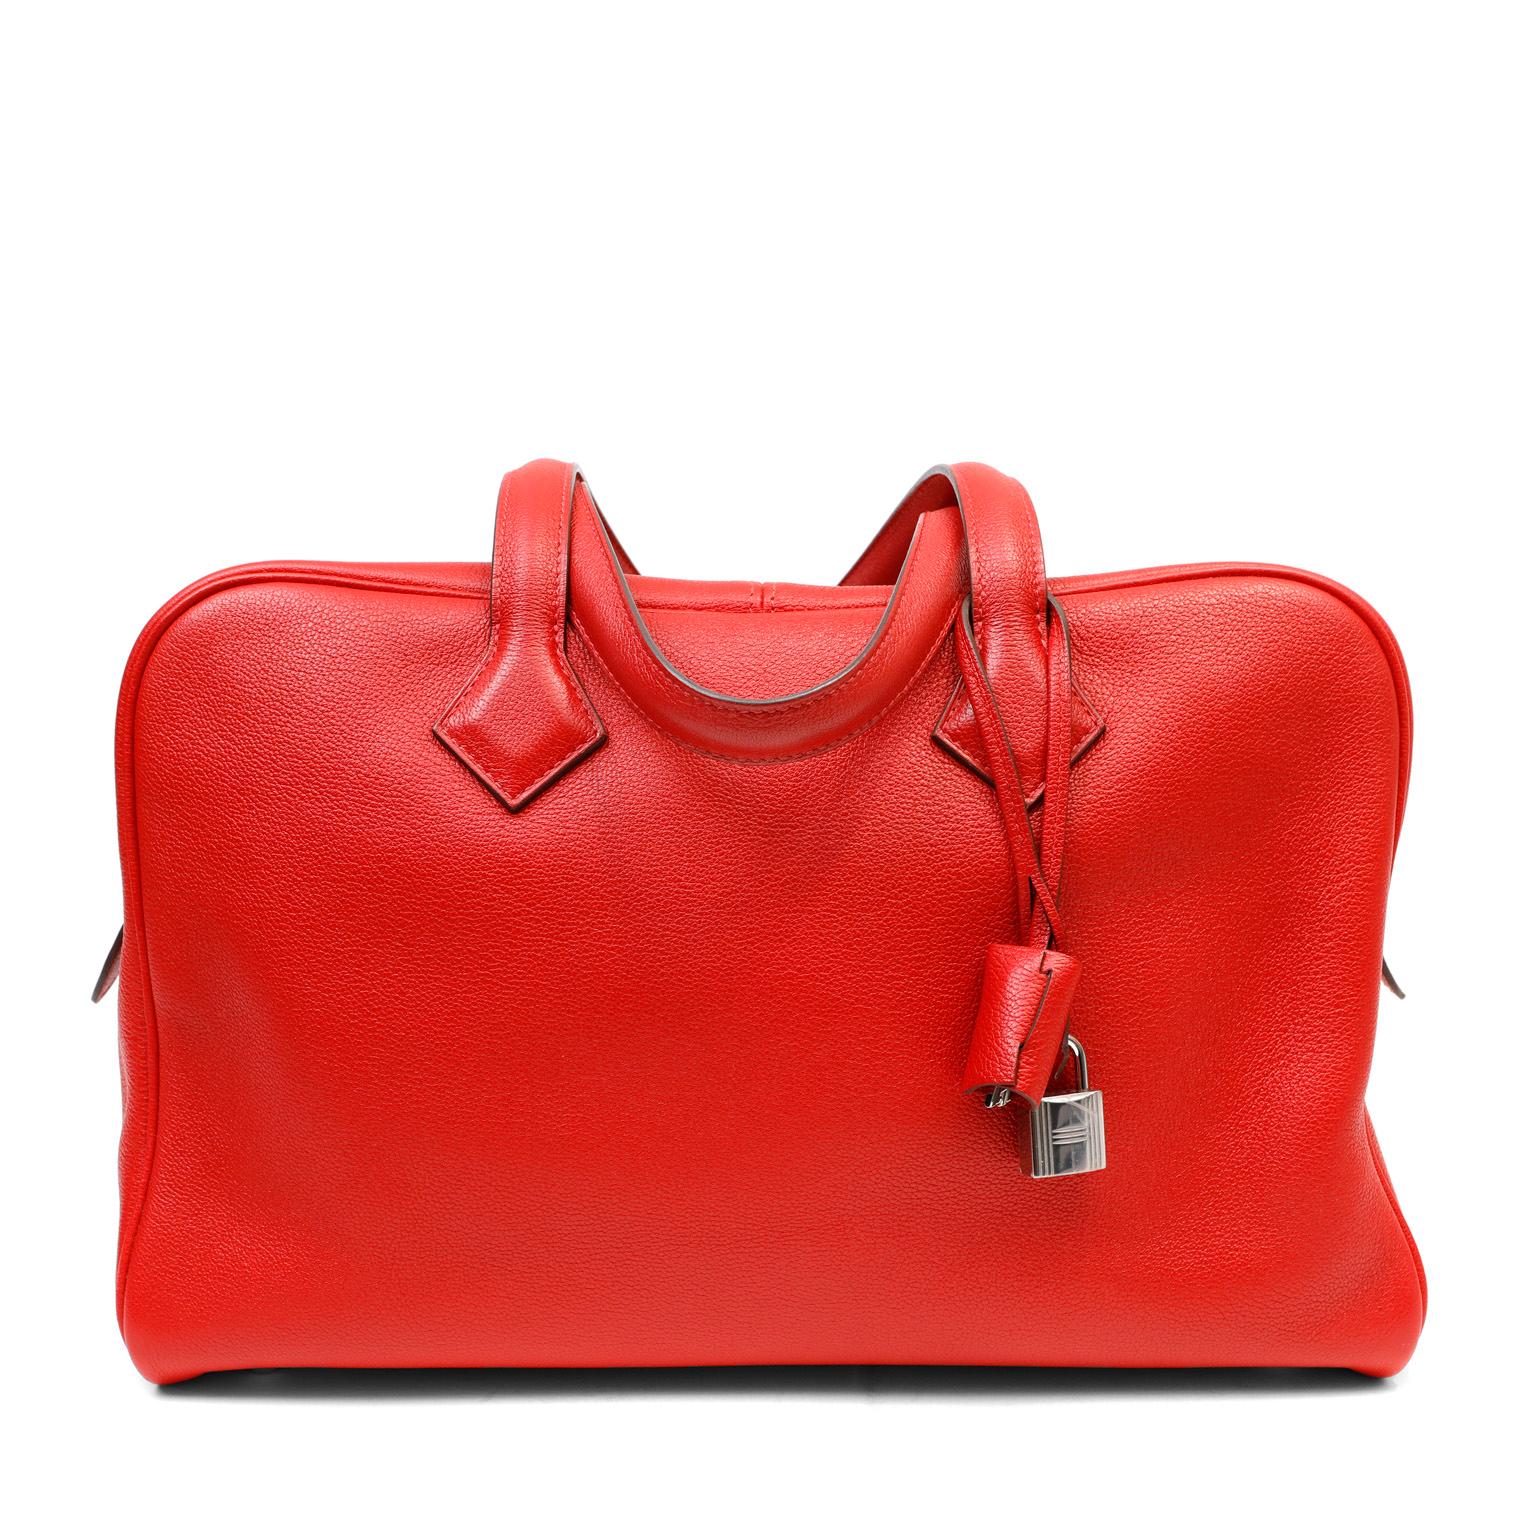 Cet authentique sac Hermès Condit II rouge est en excellent état.  La silhouette décontractée est spacieuse et douce à la main en cuir Clemence texturé rouge à lèvres.  L'intérieur en toile est accessible par une double fermeture à glissière. 